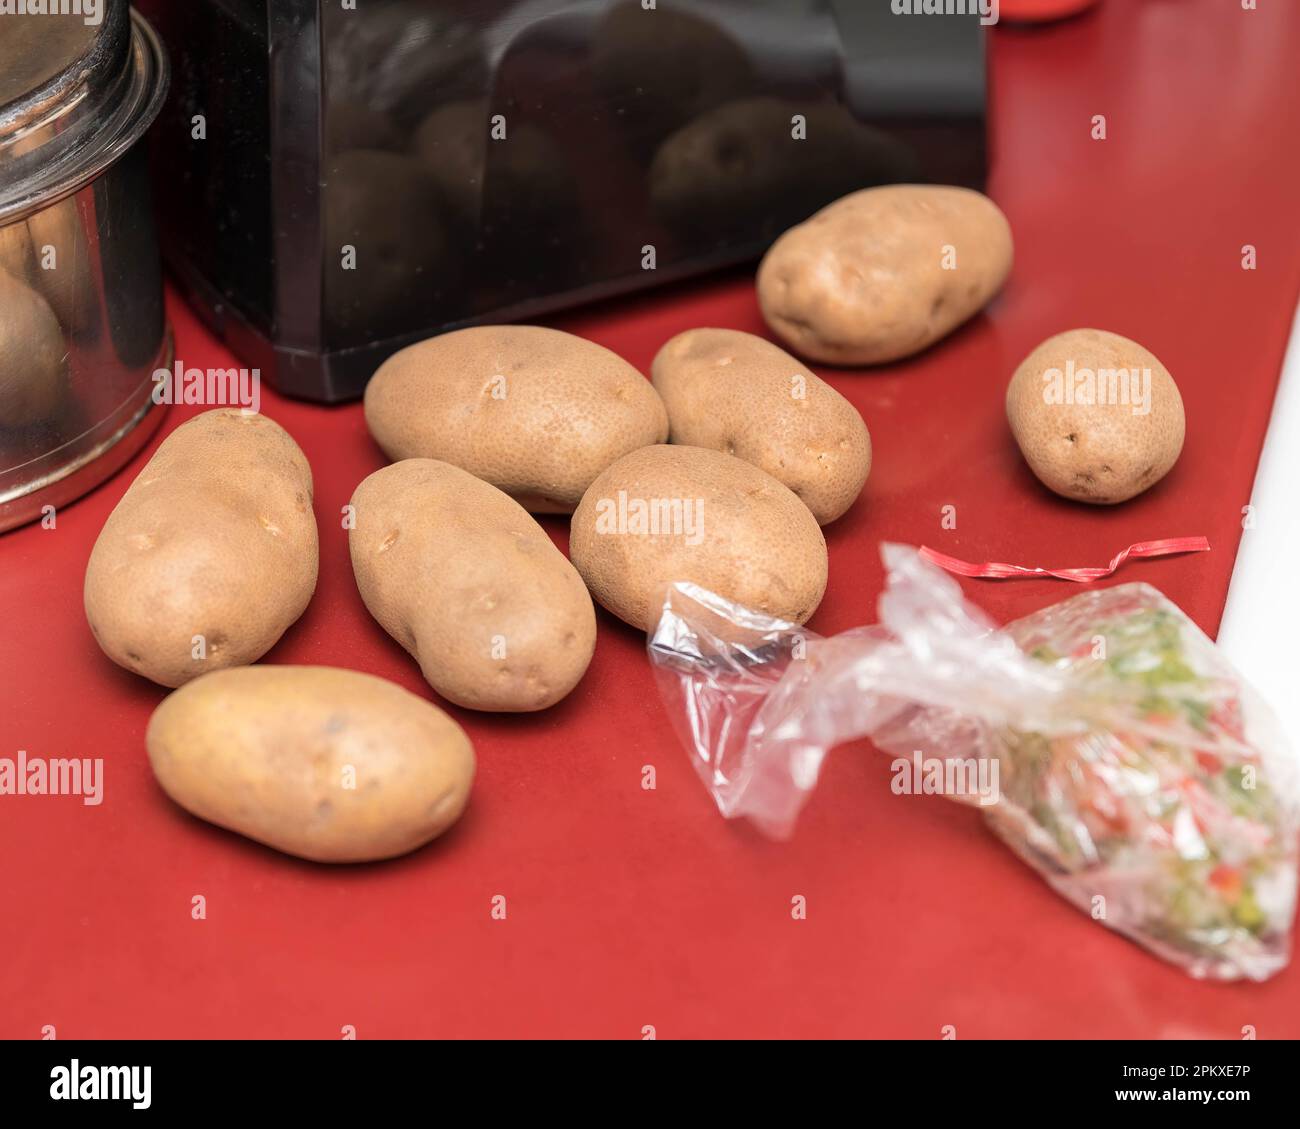 quelques pommes de terre rousslées attendant d'être pelées puis écrasées pour un dîner en famille Banque D'Images